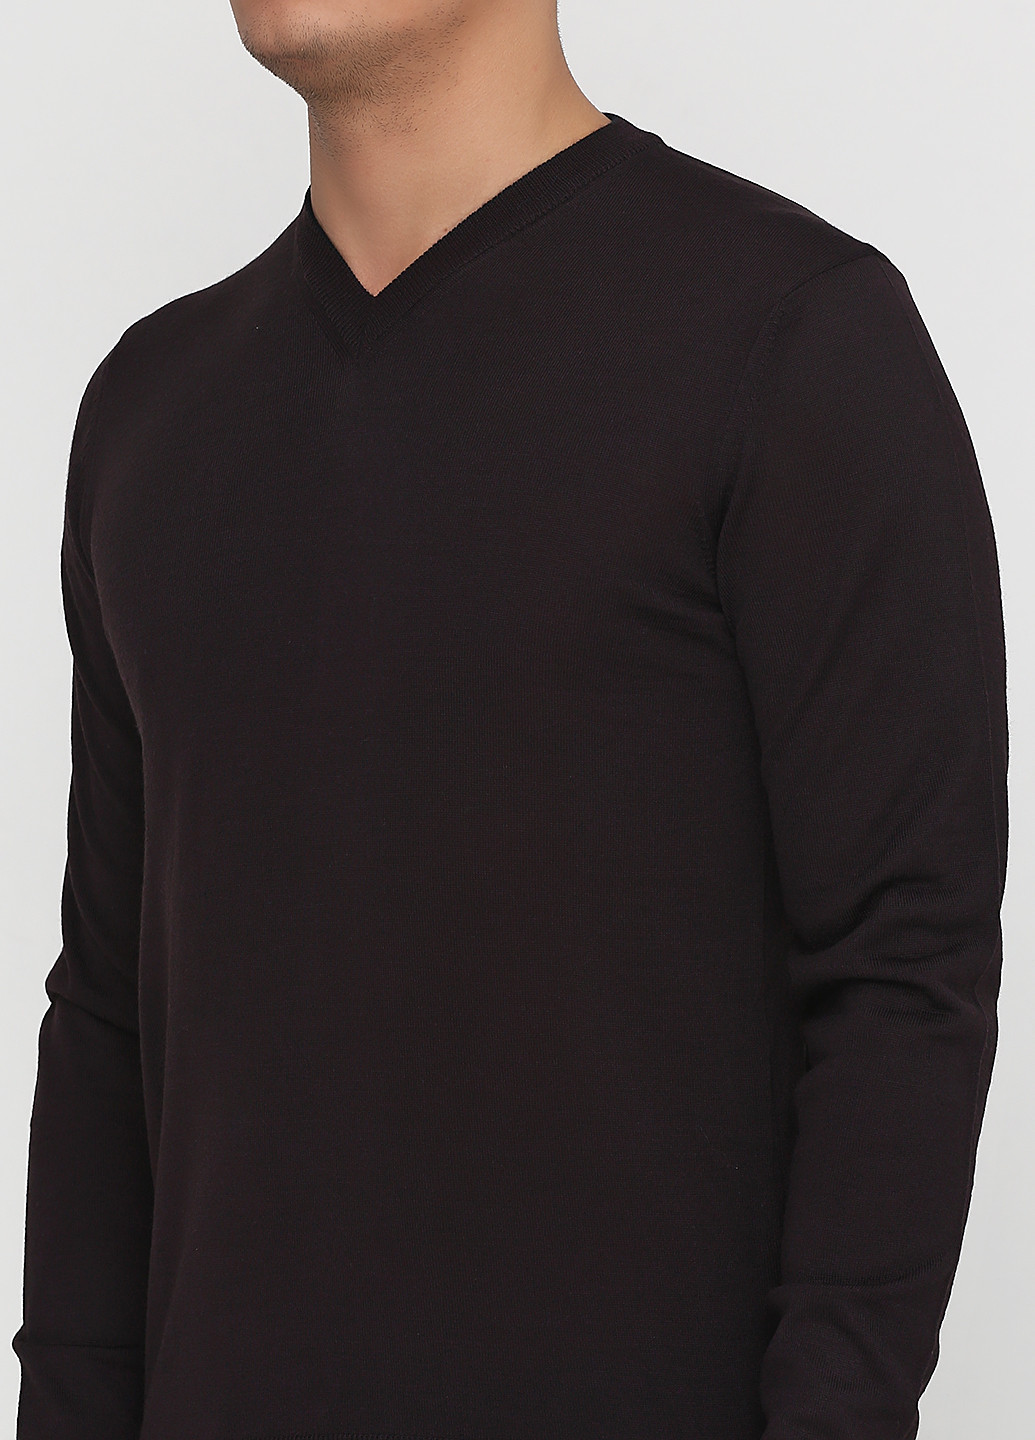 Темно-коричневый демисезонный пуловер пуловер Belika